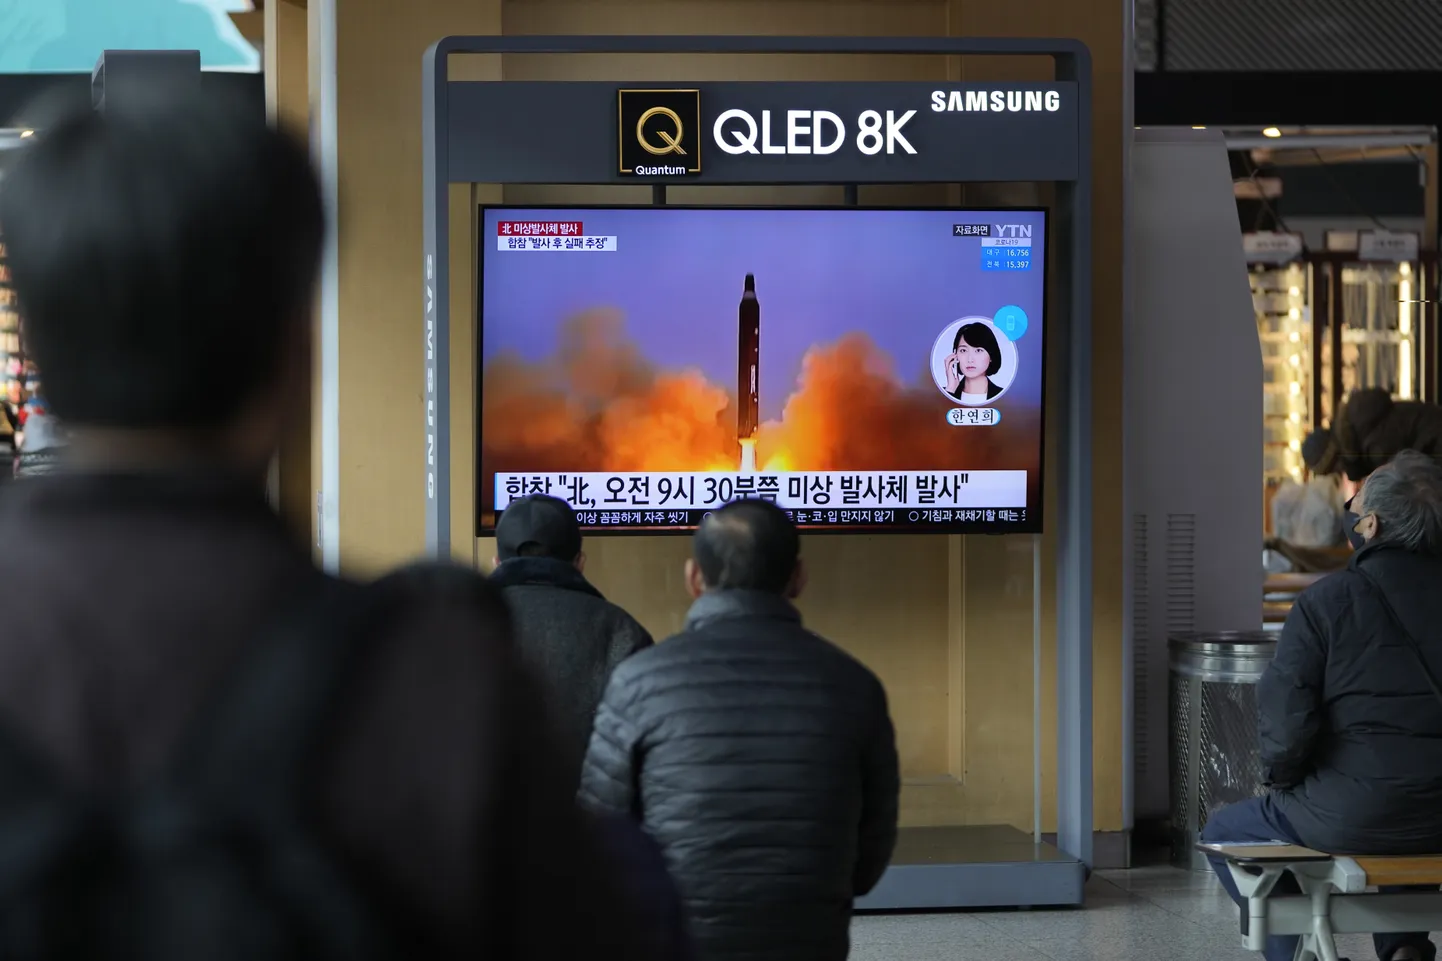 Lõuna-Korea teatas Põhja-Korea uuest relvakatsetusest, mis ilmselt ebaõnnestus.